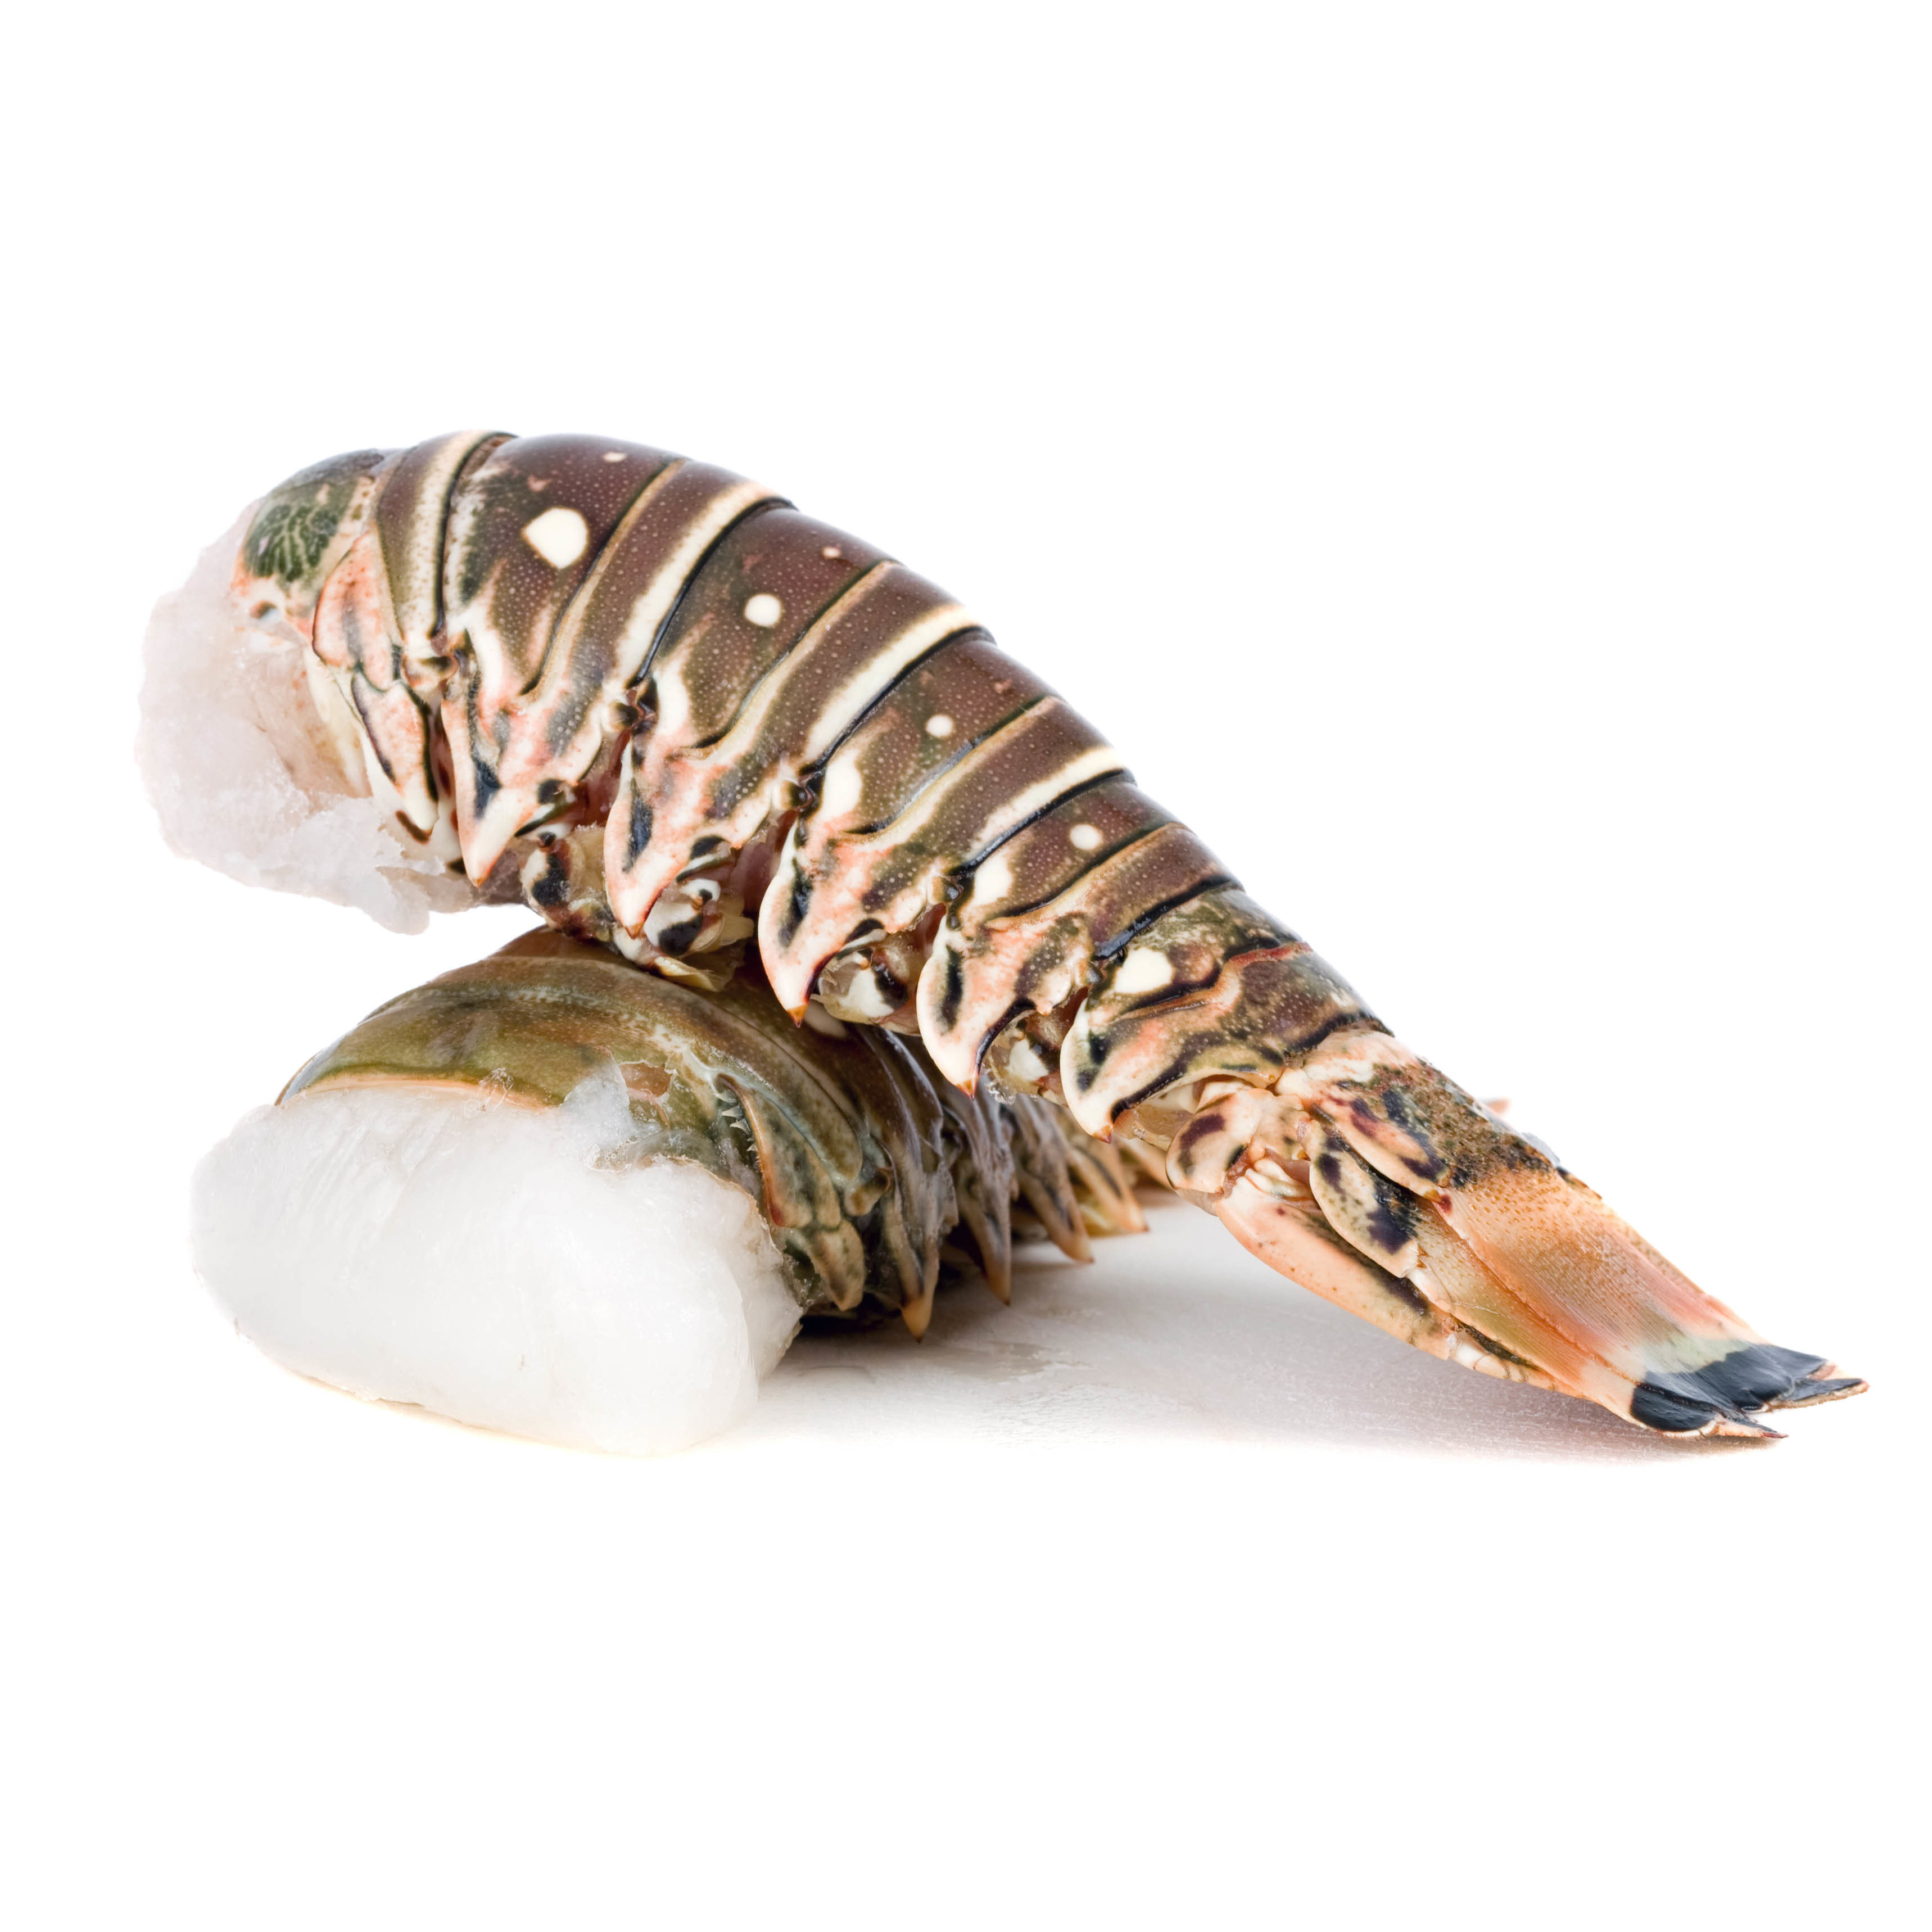 Frozen Australian Wild Green Lobster Tail | South Stream Market - South ...